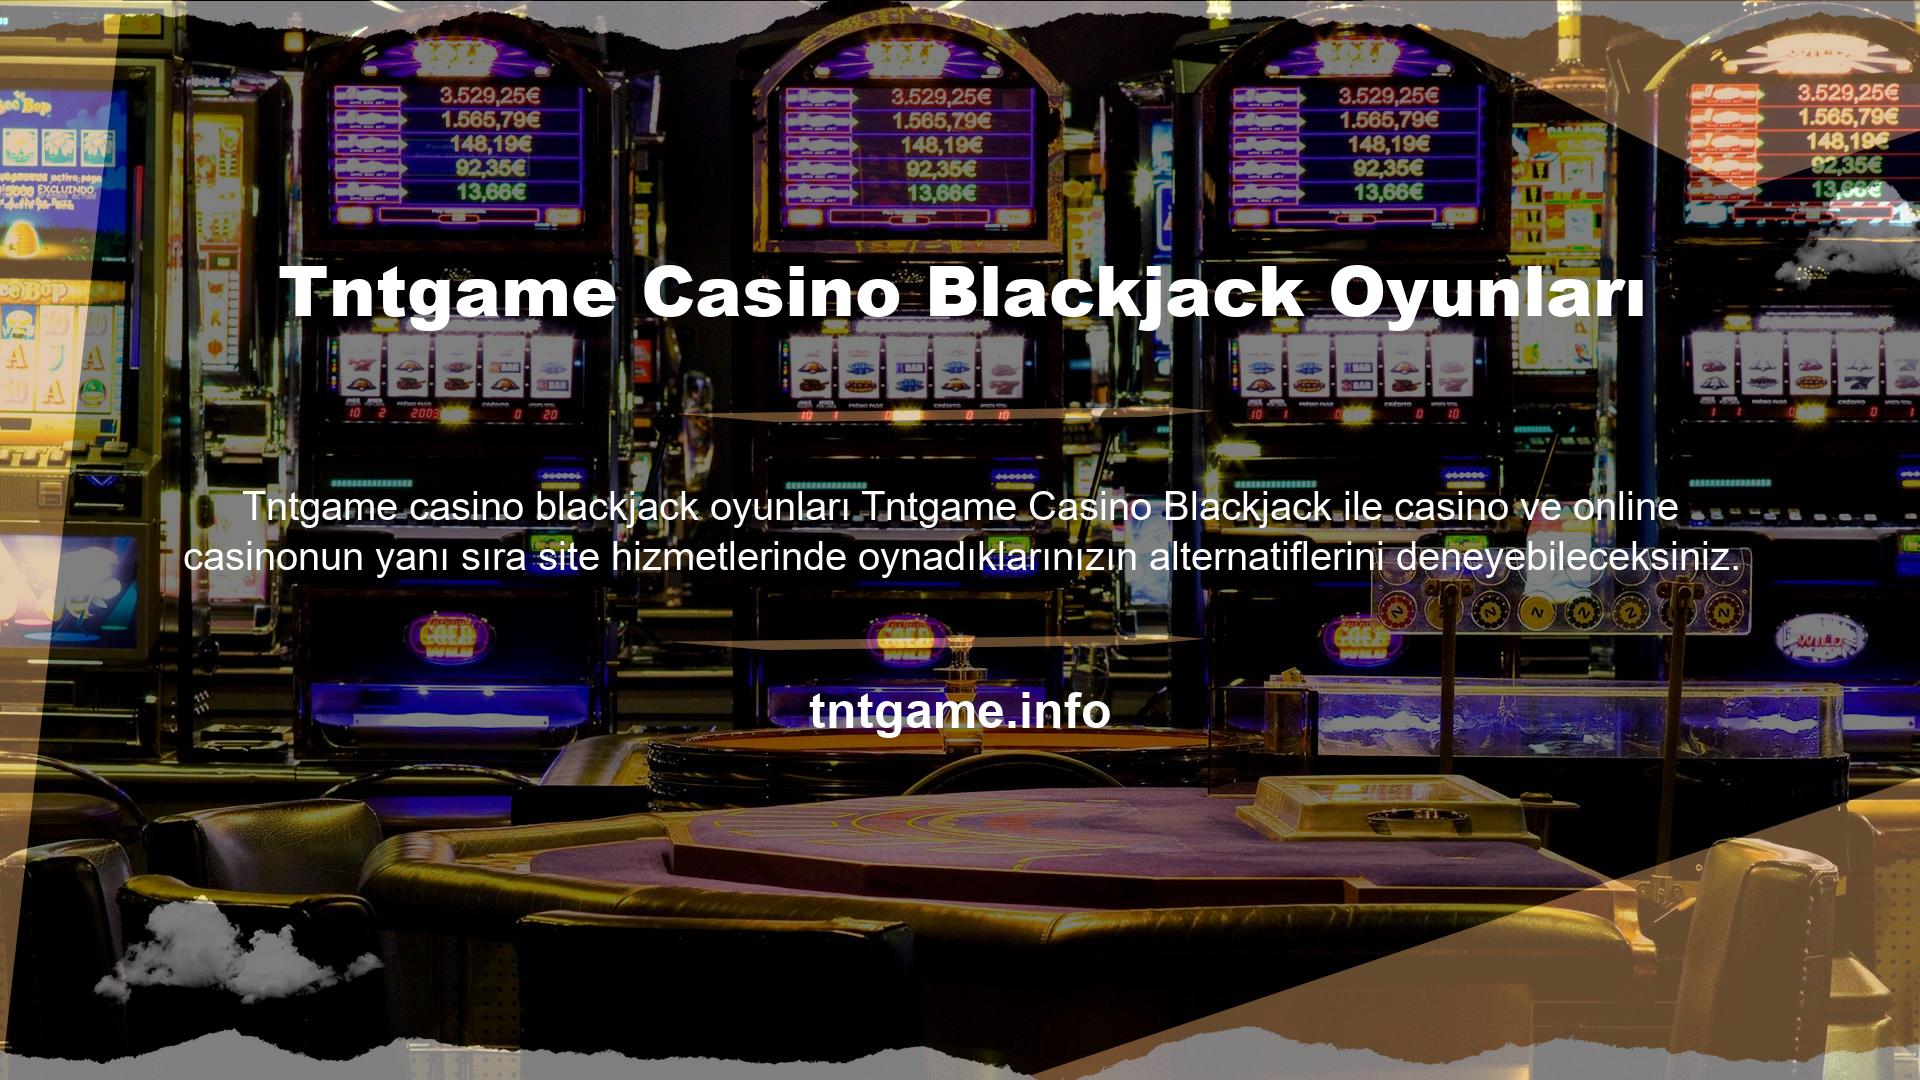 Tntgame casino blackjack oyunları